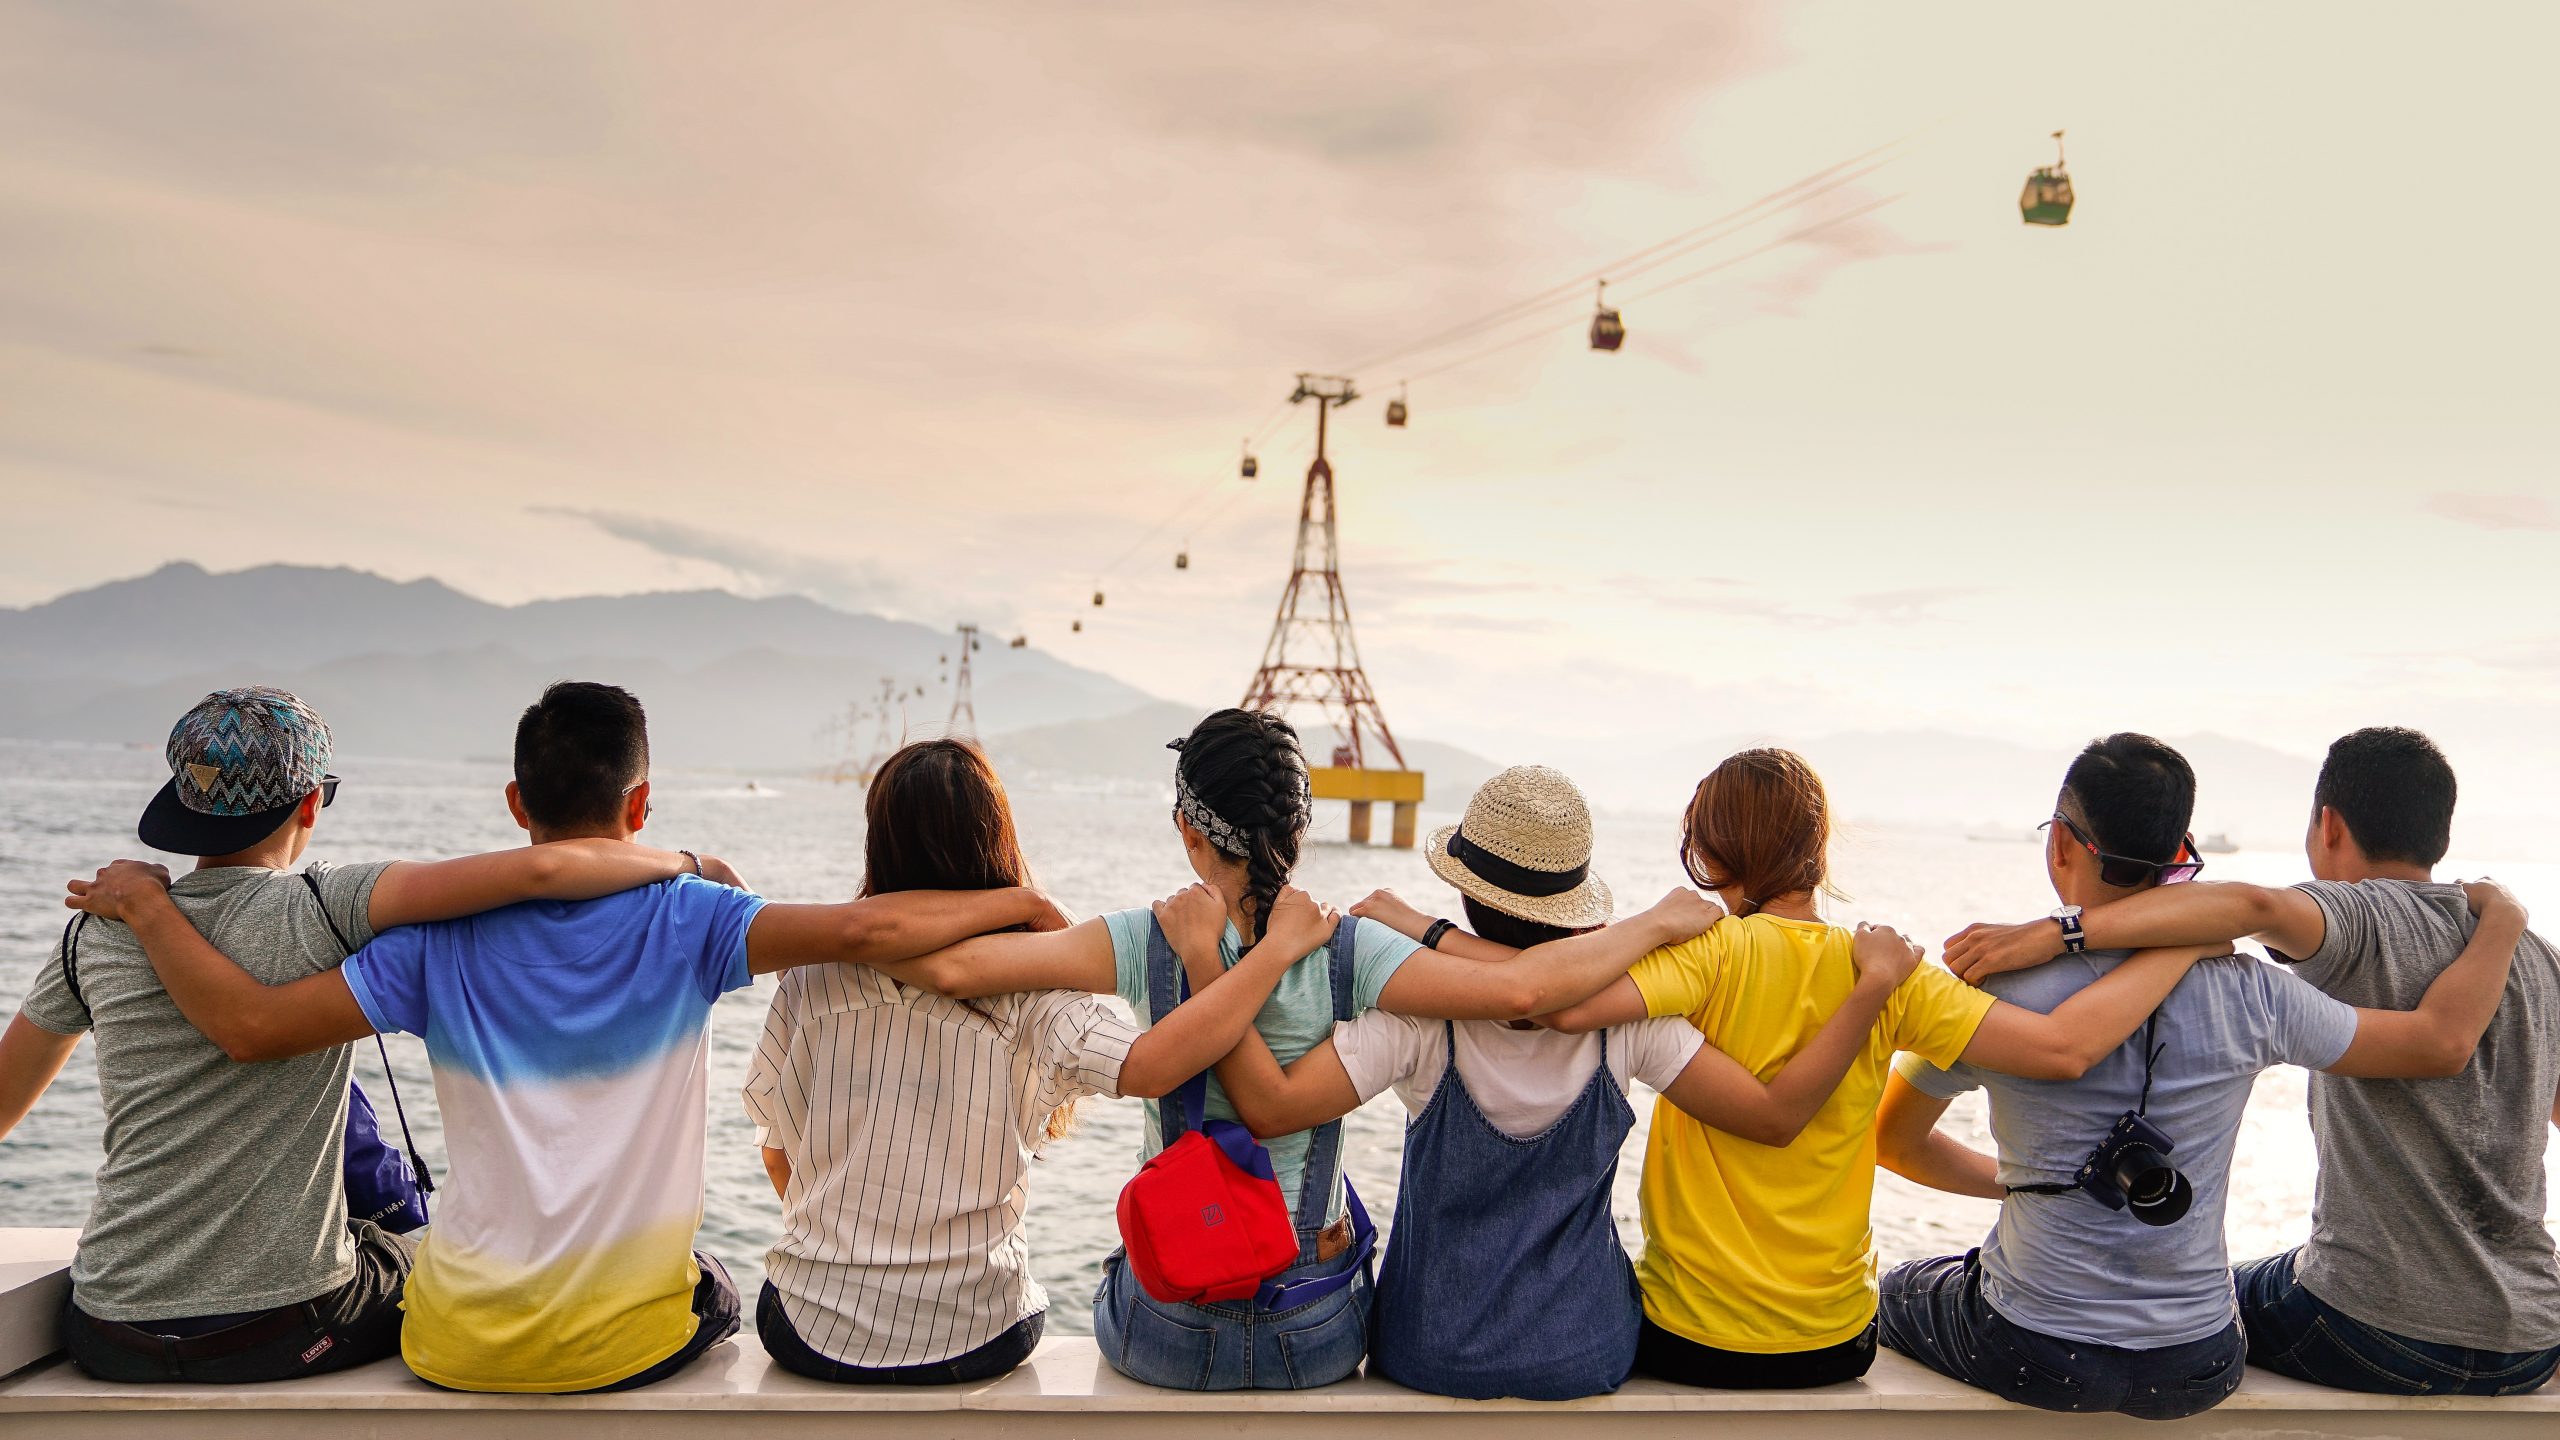 Um grupo de amigos da República Estudantil sentados à beira-mar, observando os teleféricos suspensos sobre o mar, tendo como pano de fundo montanhas distantes.